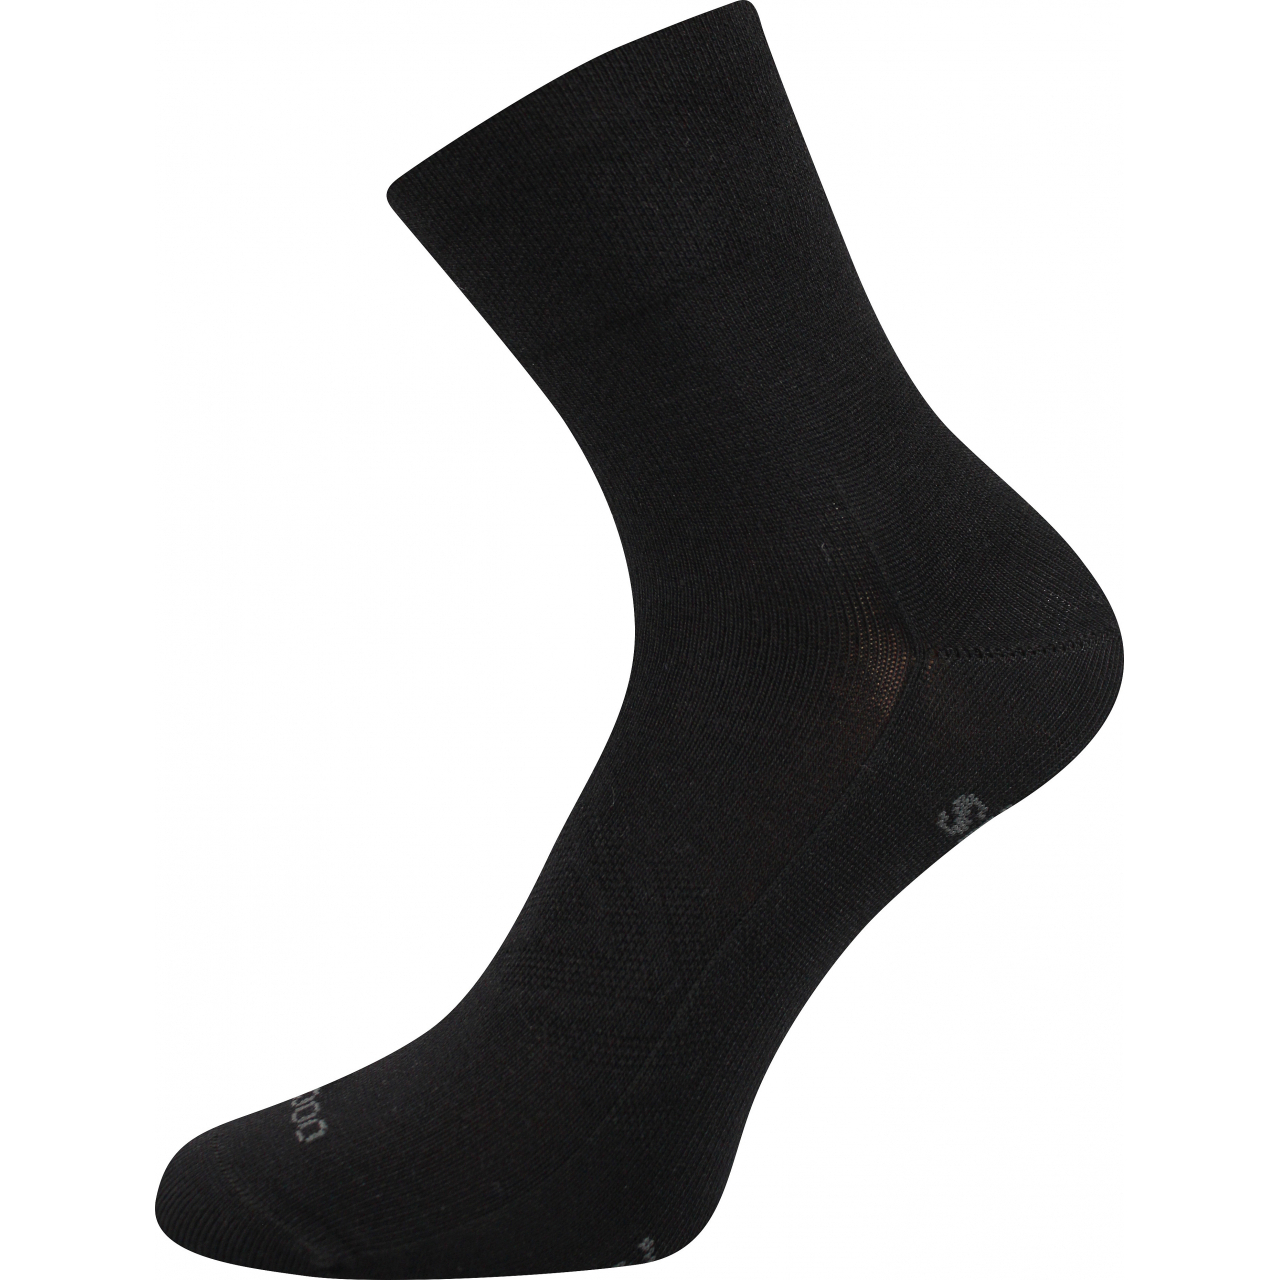 Ponožky sportovní unisex Voxx Baeron - černé, 43-46